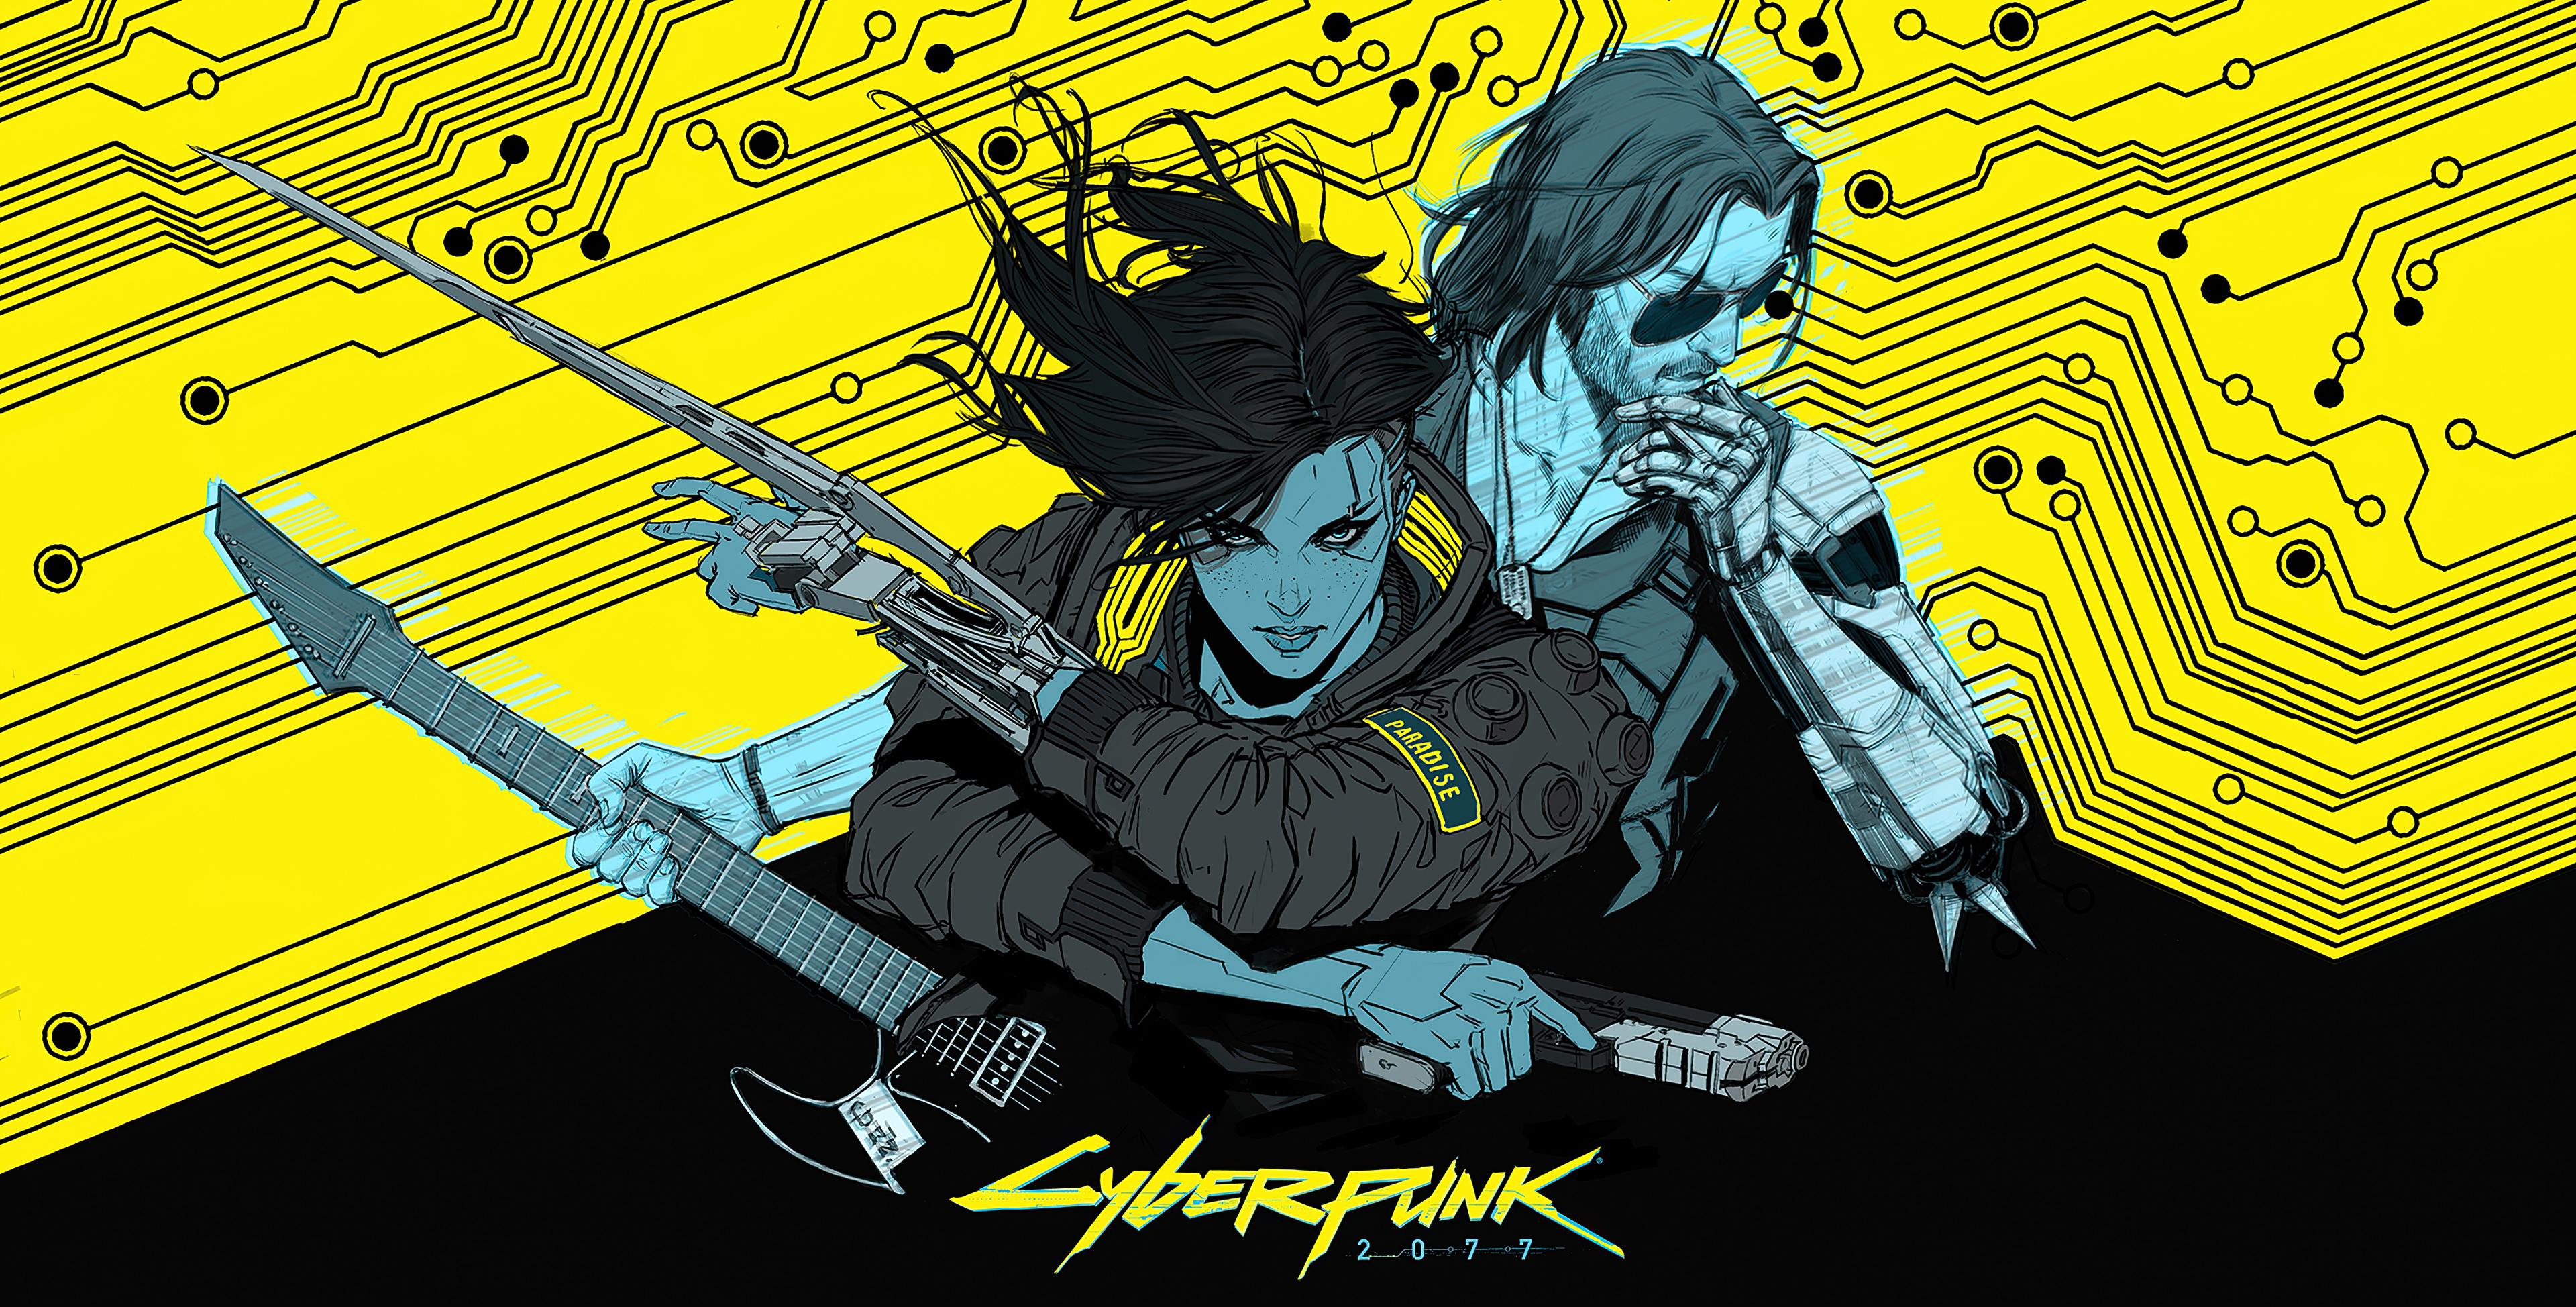 Cyberpunk 2077 - Bạn có muốn tham gia một trò chơi điện tử HD 4k đầy kịch tính? Hãy xem hình ảnh của Cyberpunk 2077 để nhận cái nhìn đầu tiên về thế giới tương lai đầy mê hoặc này. Ngắm nhìn những cảnh quan đẹp mắt với những chi tiết tinh tế và đồng hành cùng các nhân vật chính trong cuộc phiêu lưu đầy thử thách.